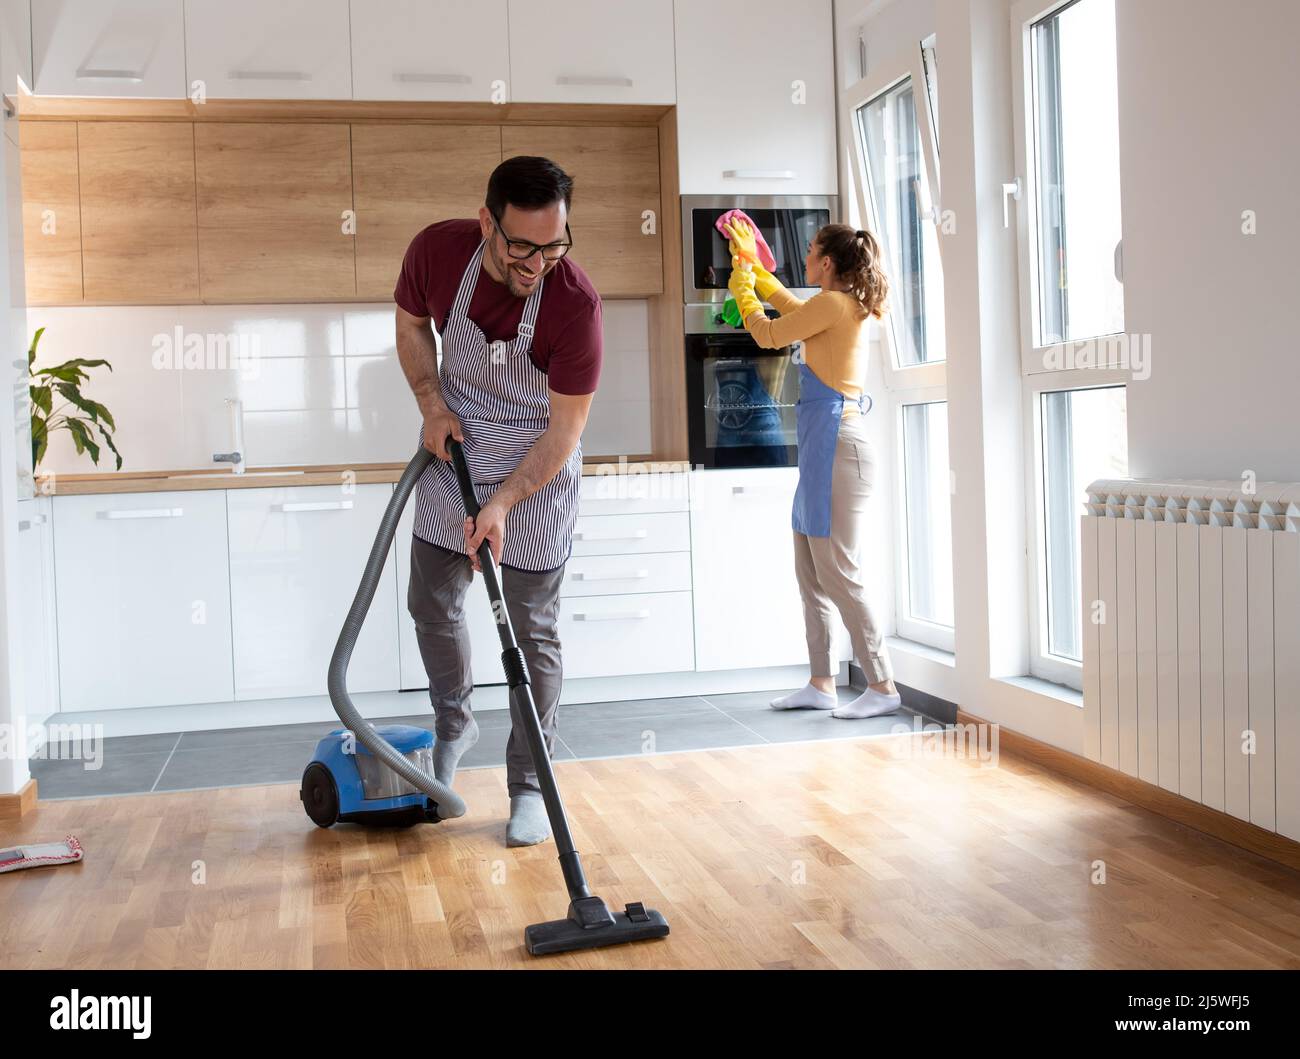 Das Paar erledigt ihre Arbeit zusammen, während eine Frau den Staub abwischt und ein Mann den Boden mit einem Staubsauger saugt. Stockfoto